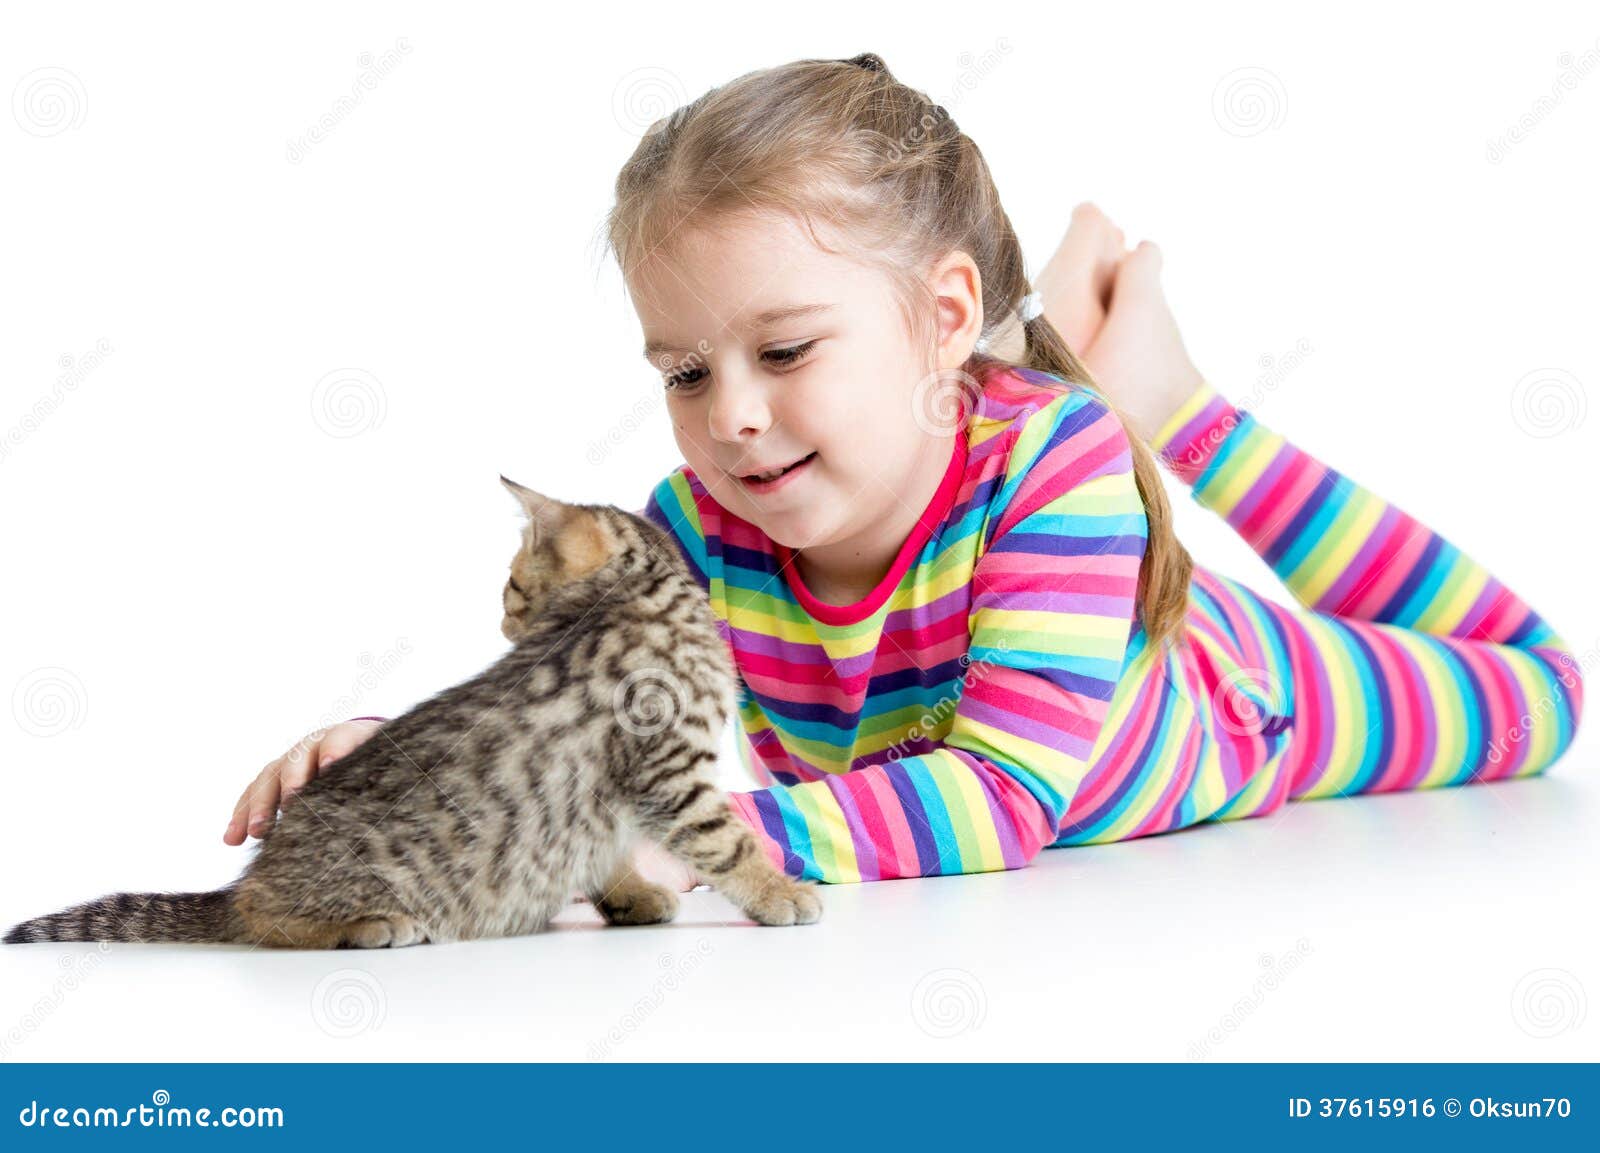 抱猫的小女孩-中关村在线摄影论坛